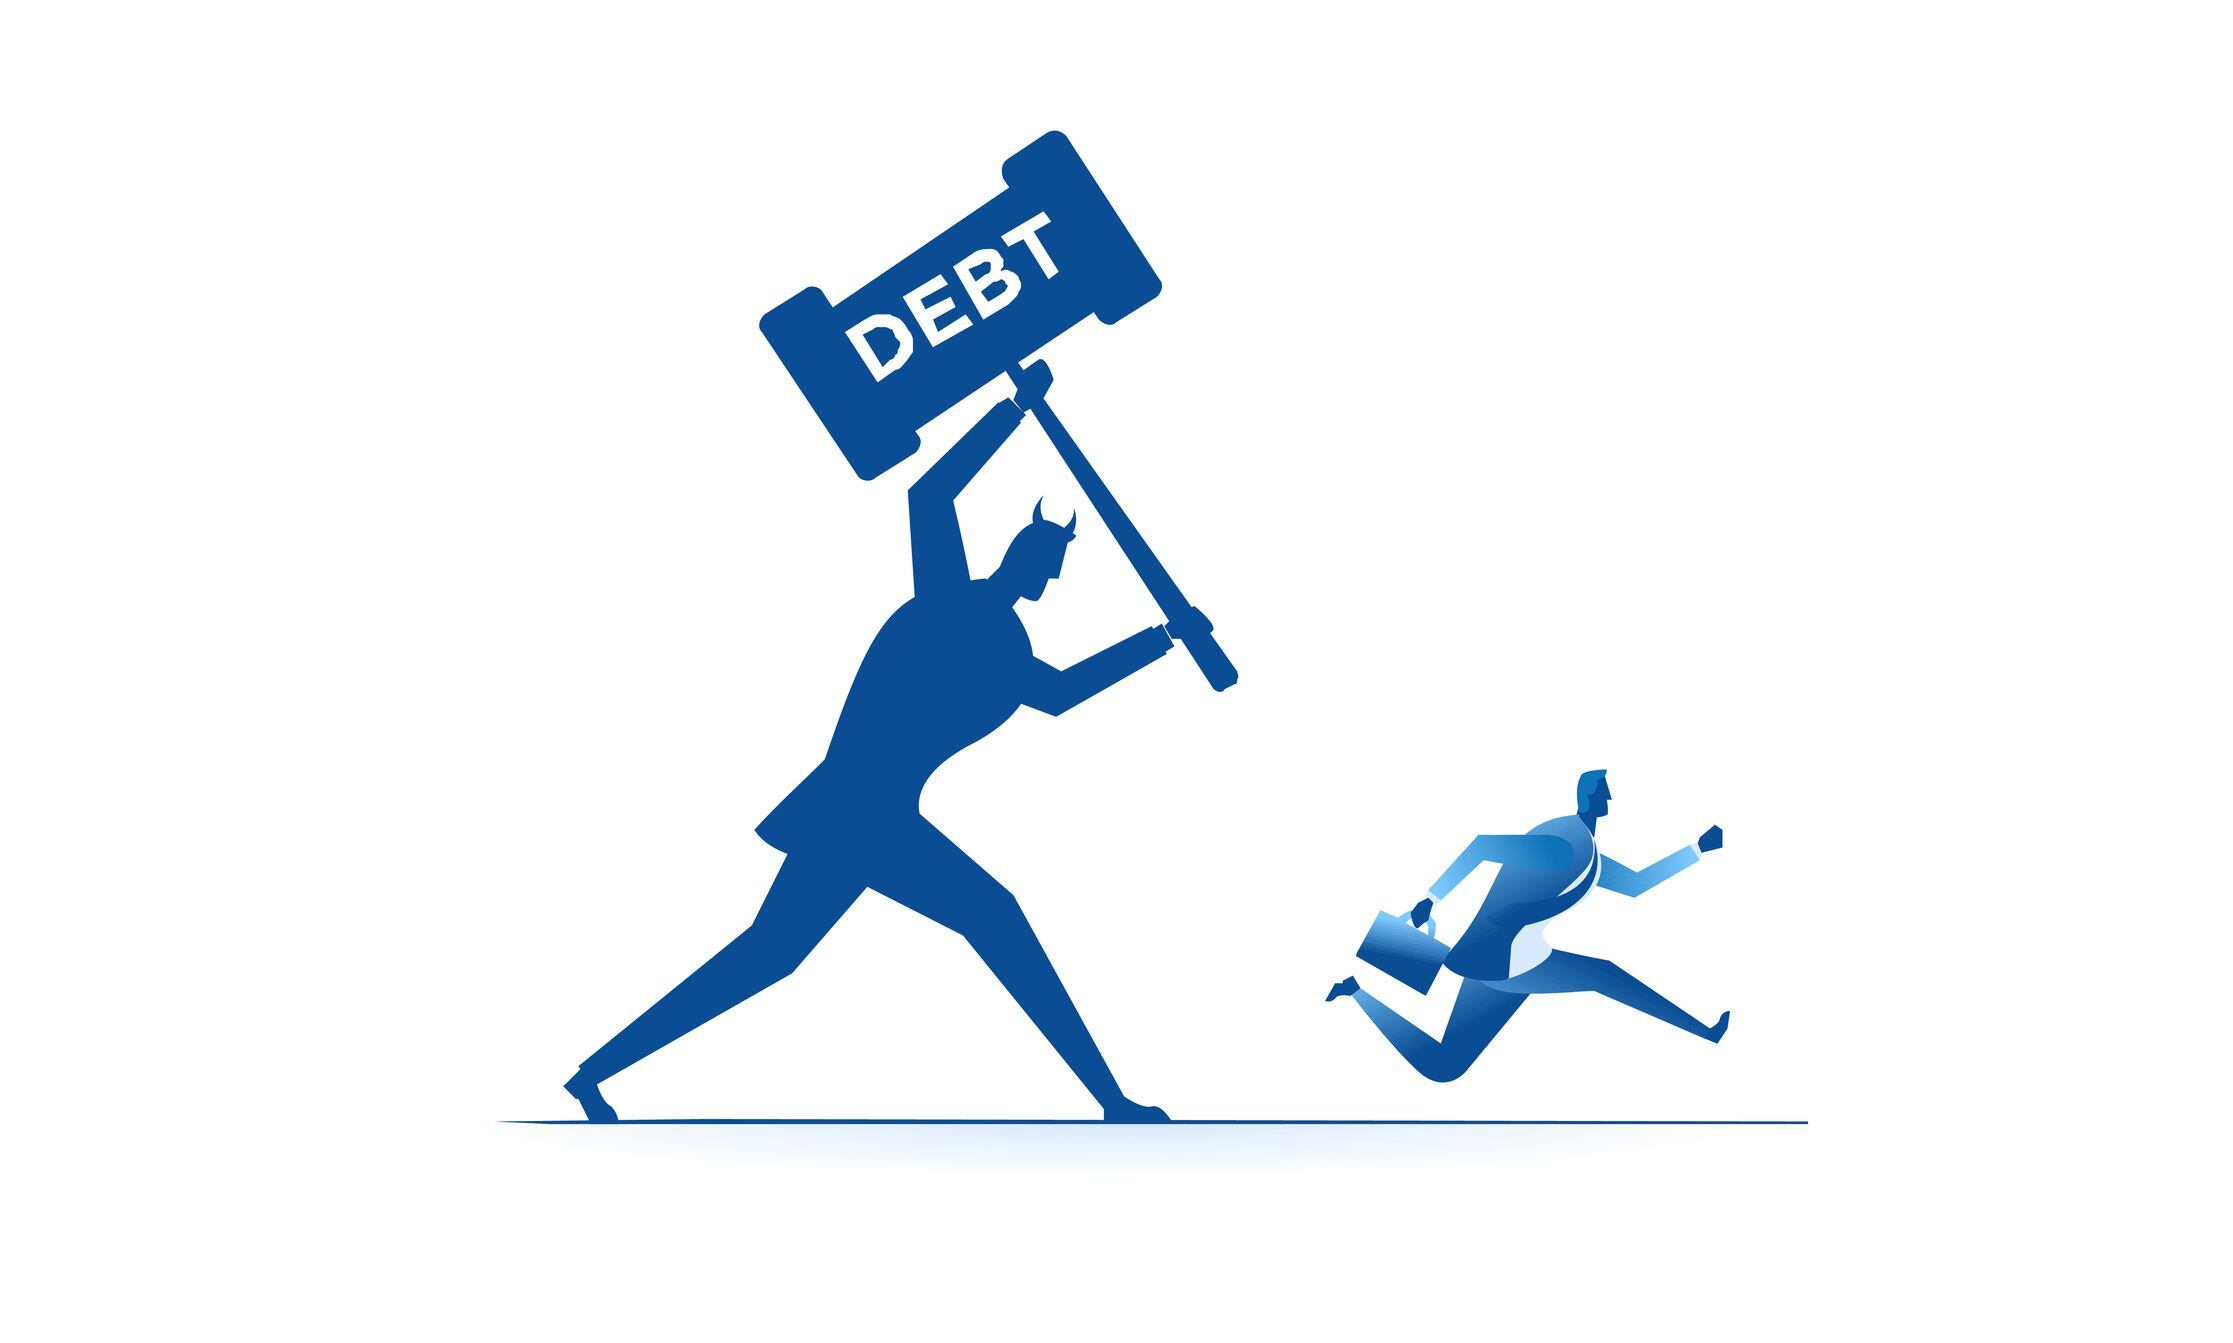 datacrédito: ¿en cuánto tiempo prescribe una deuda y se puede salir sin haber pagado?